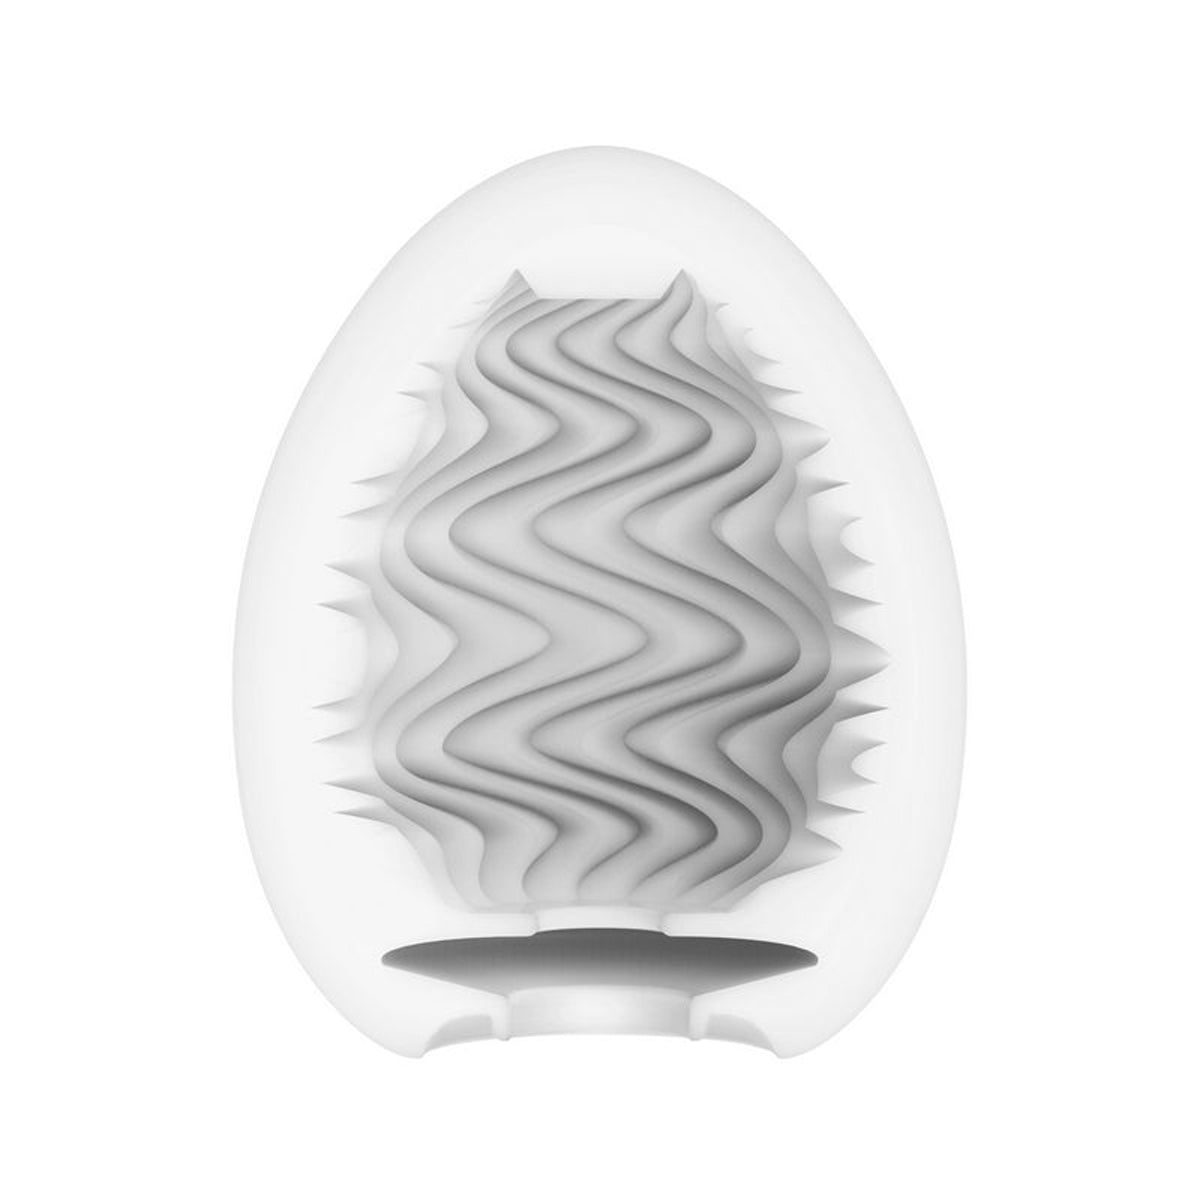 Tenga - Egg Masturbator - Wonder Wind